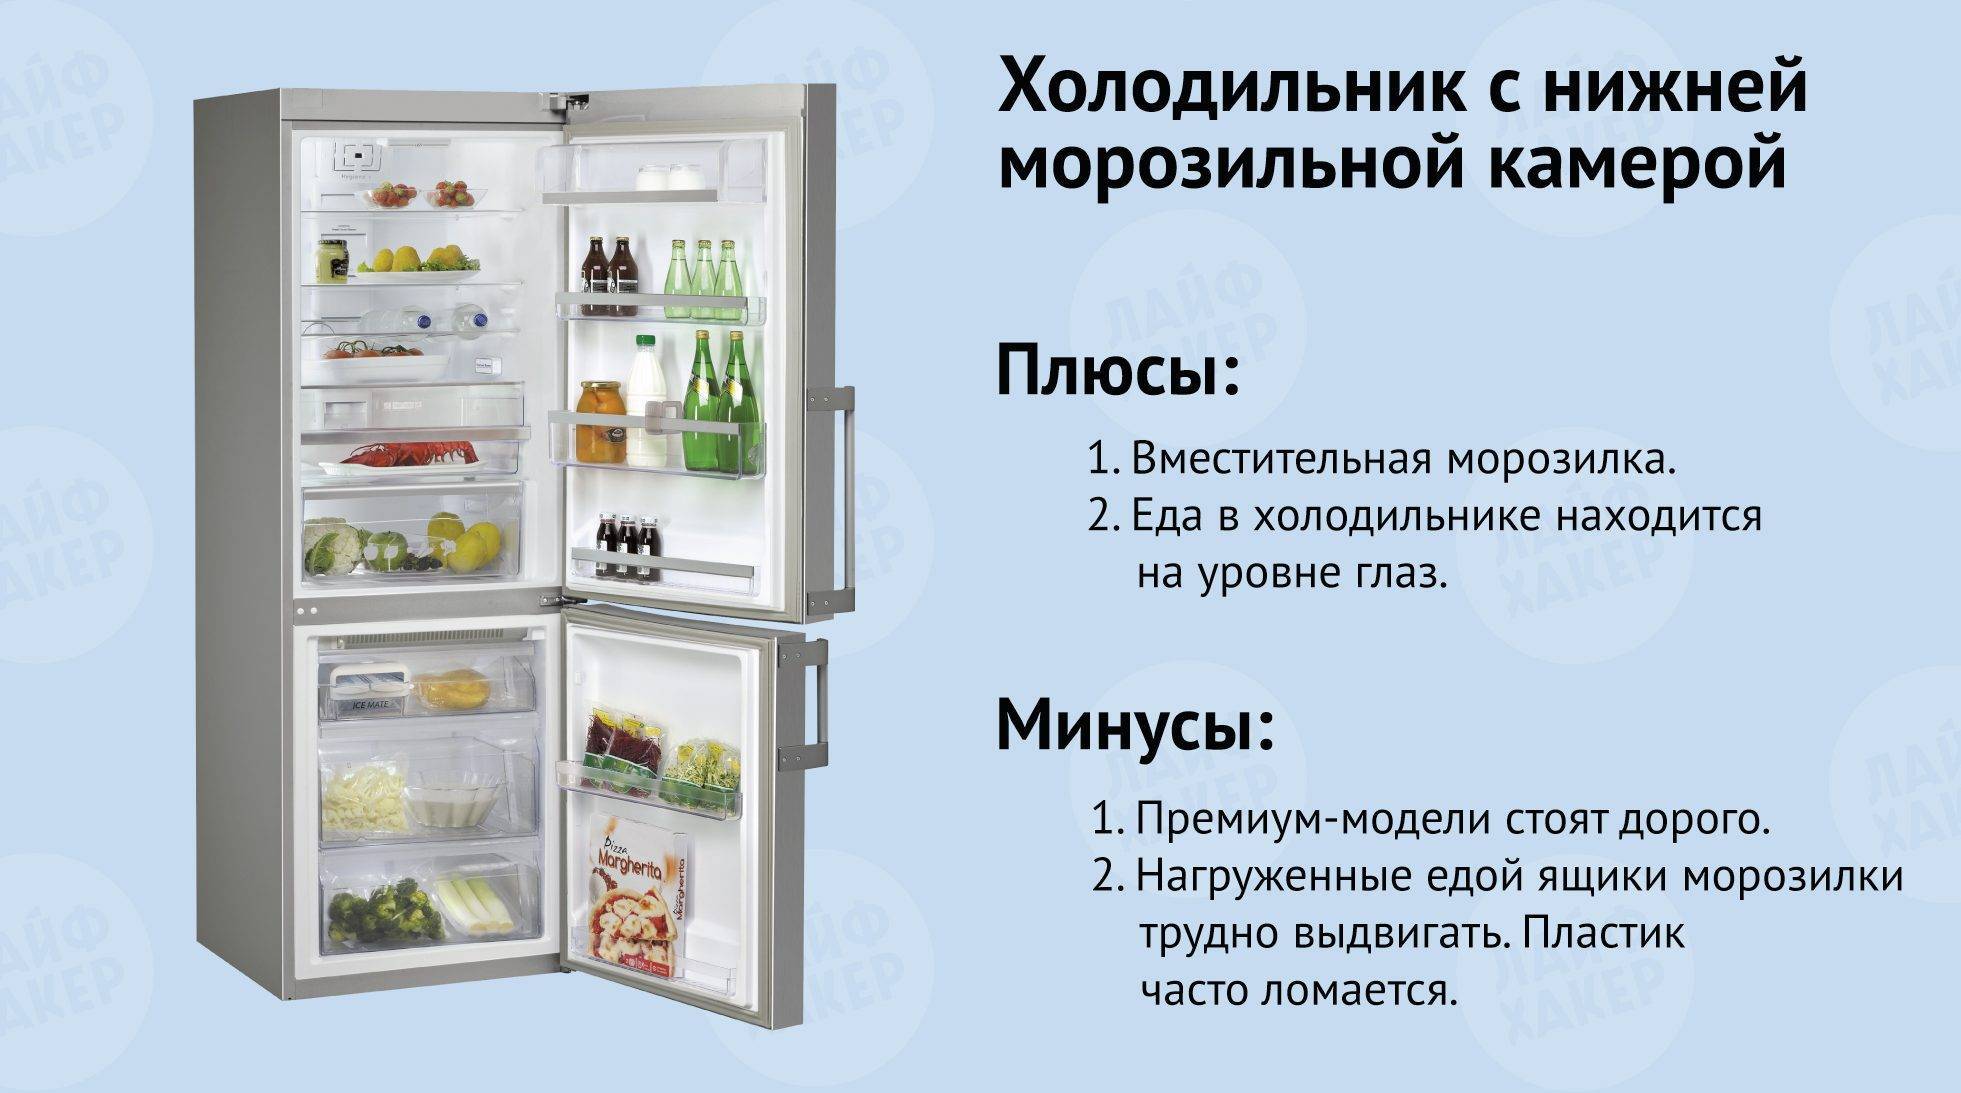 Какая температура должна быть в холодильнике и морозильной камере